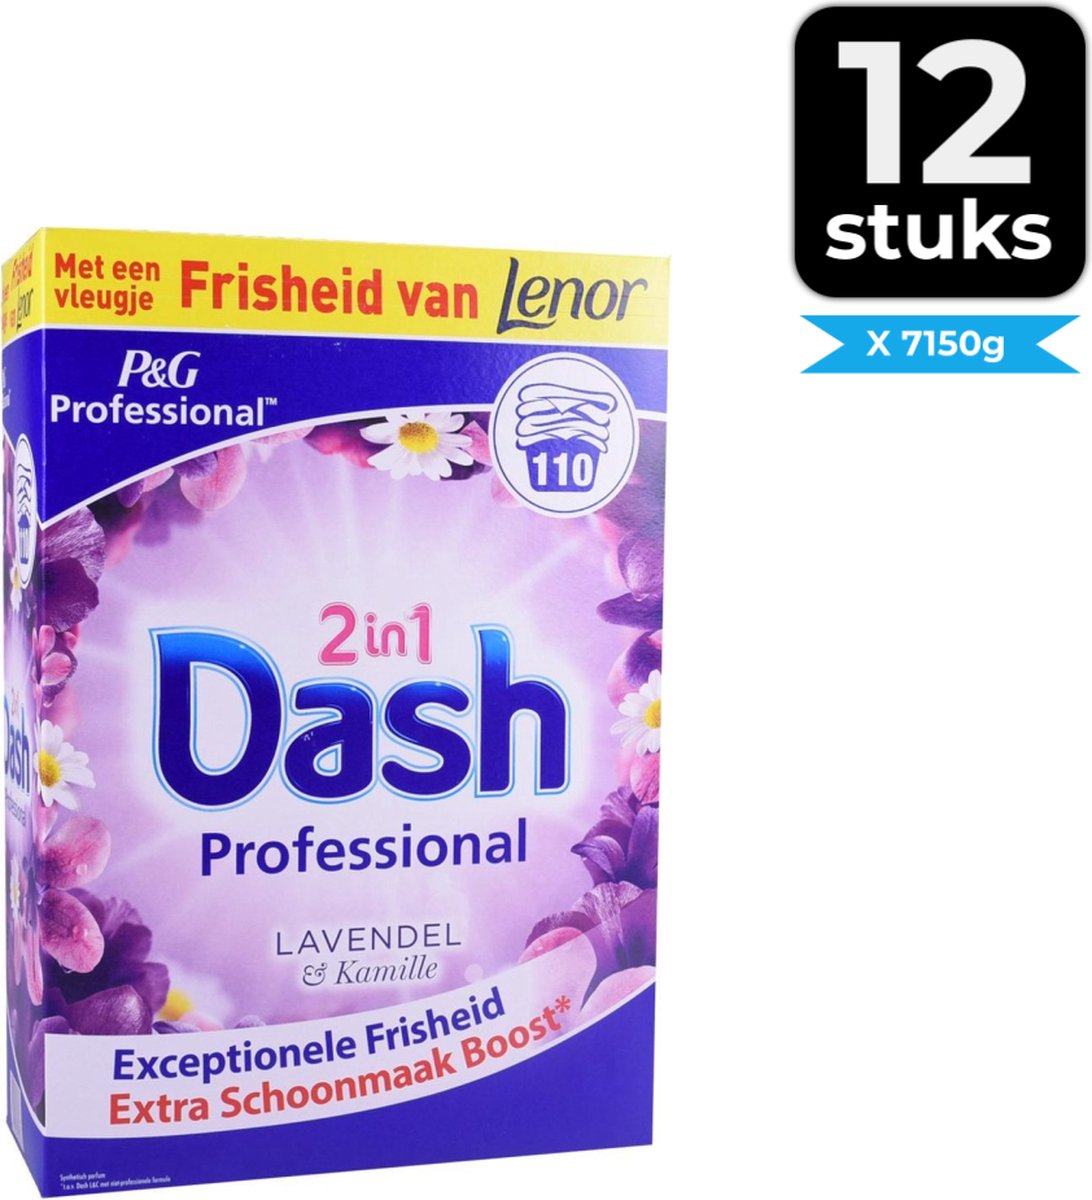 Dash 2in1 Waspoeder En Wasverzachter Lavendel en Kamille - 110 wasbeurten - Bloemig - Voordeelverpakking 12 stuks